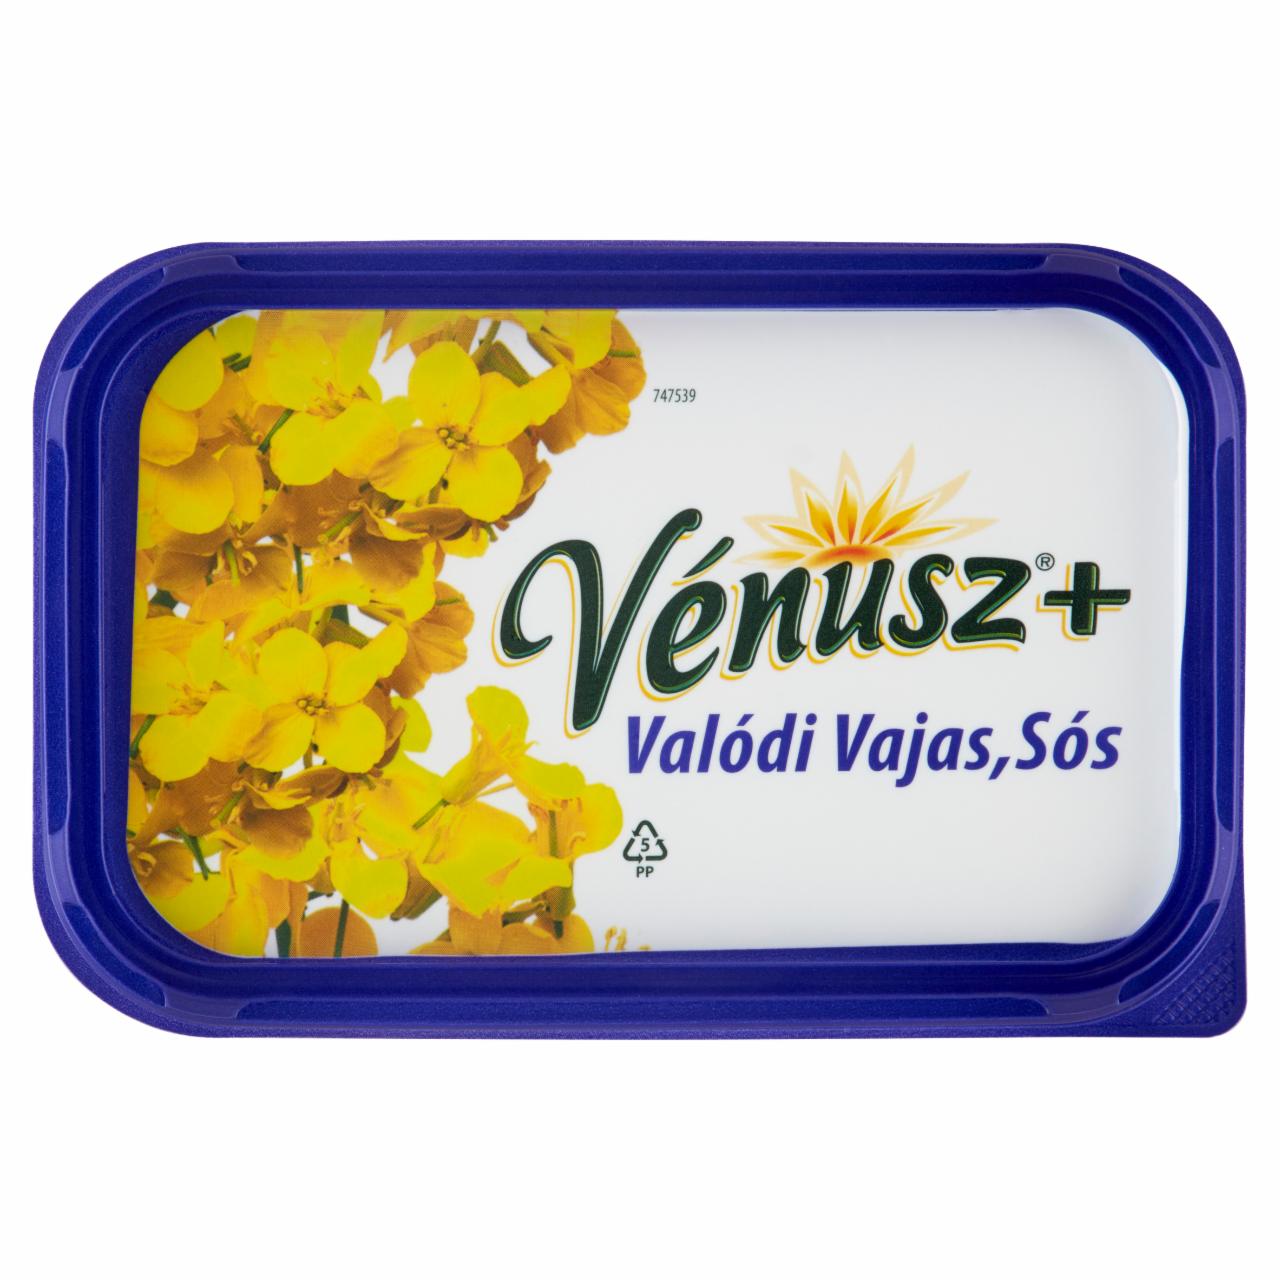 Képek - Vénusz+ Valódi Vajas, Sós 55% zsírtartalmú margarin 450 g